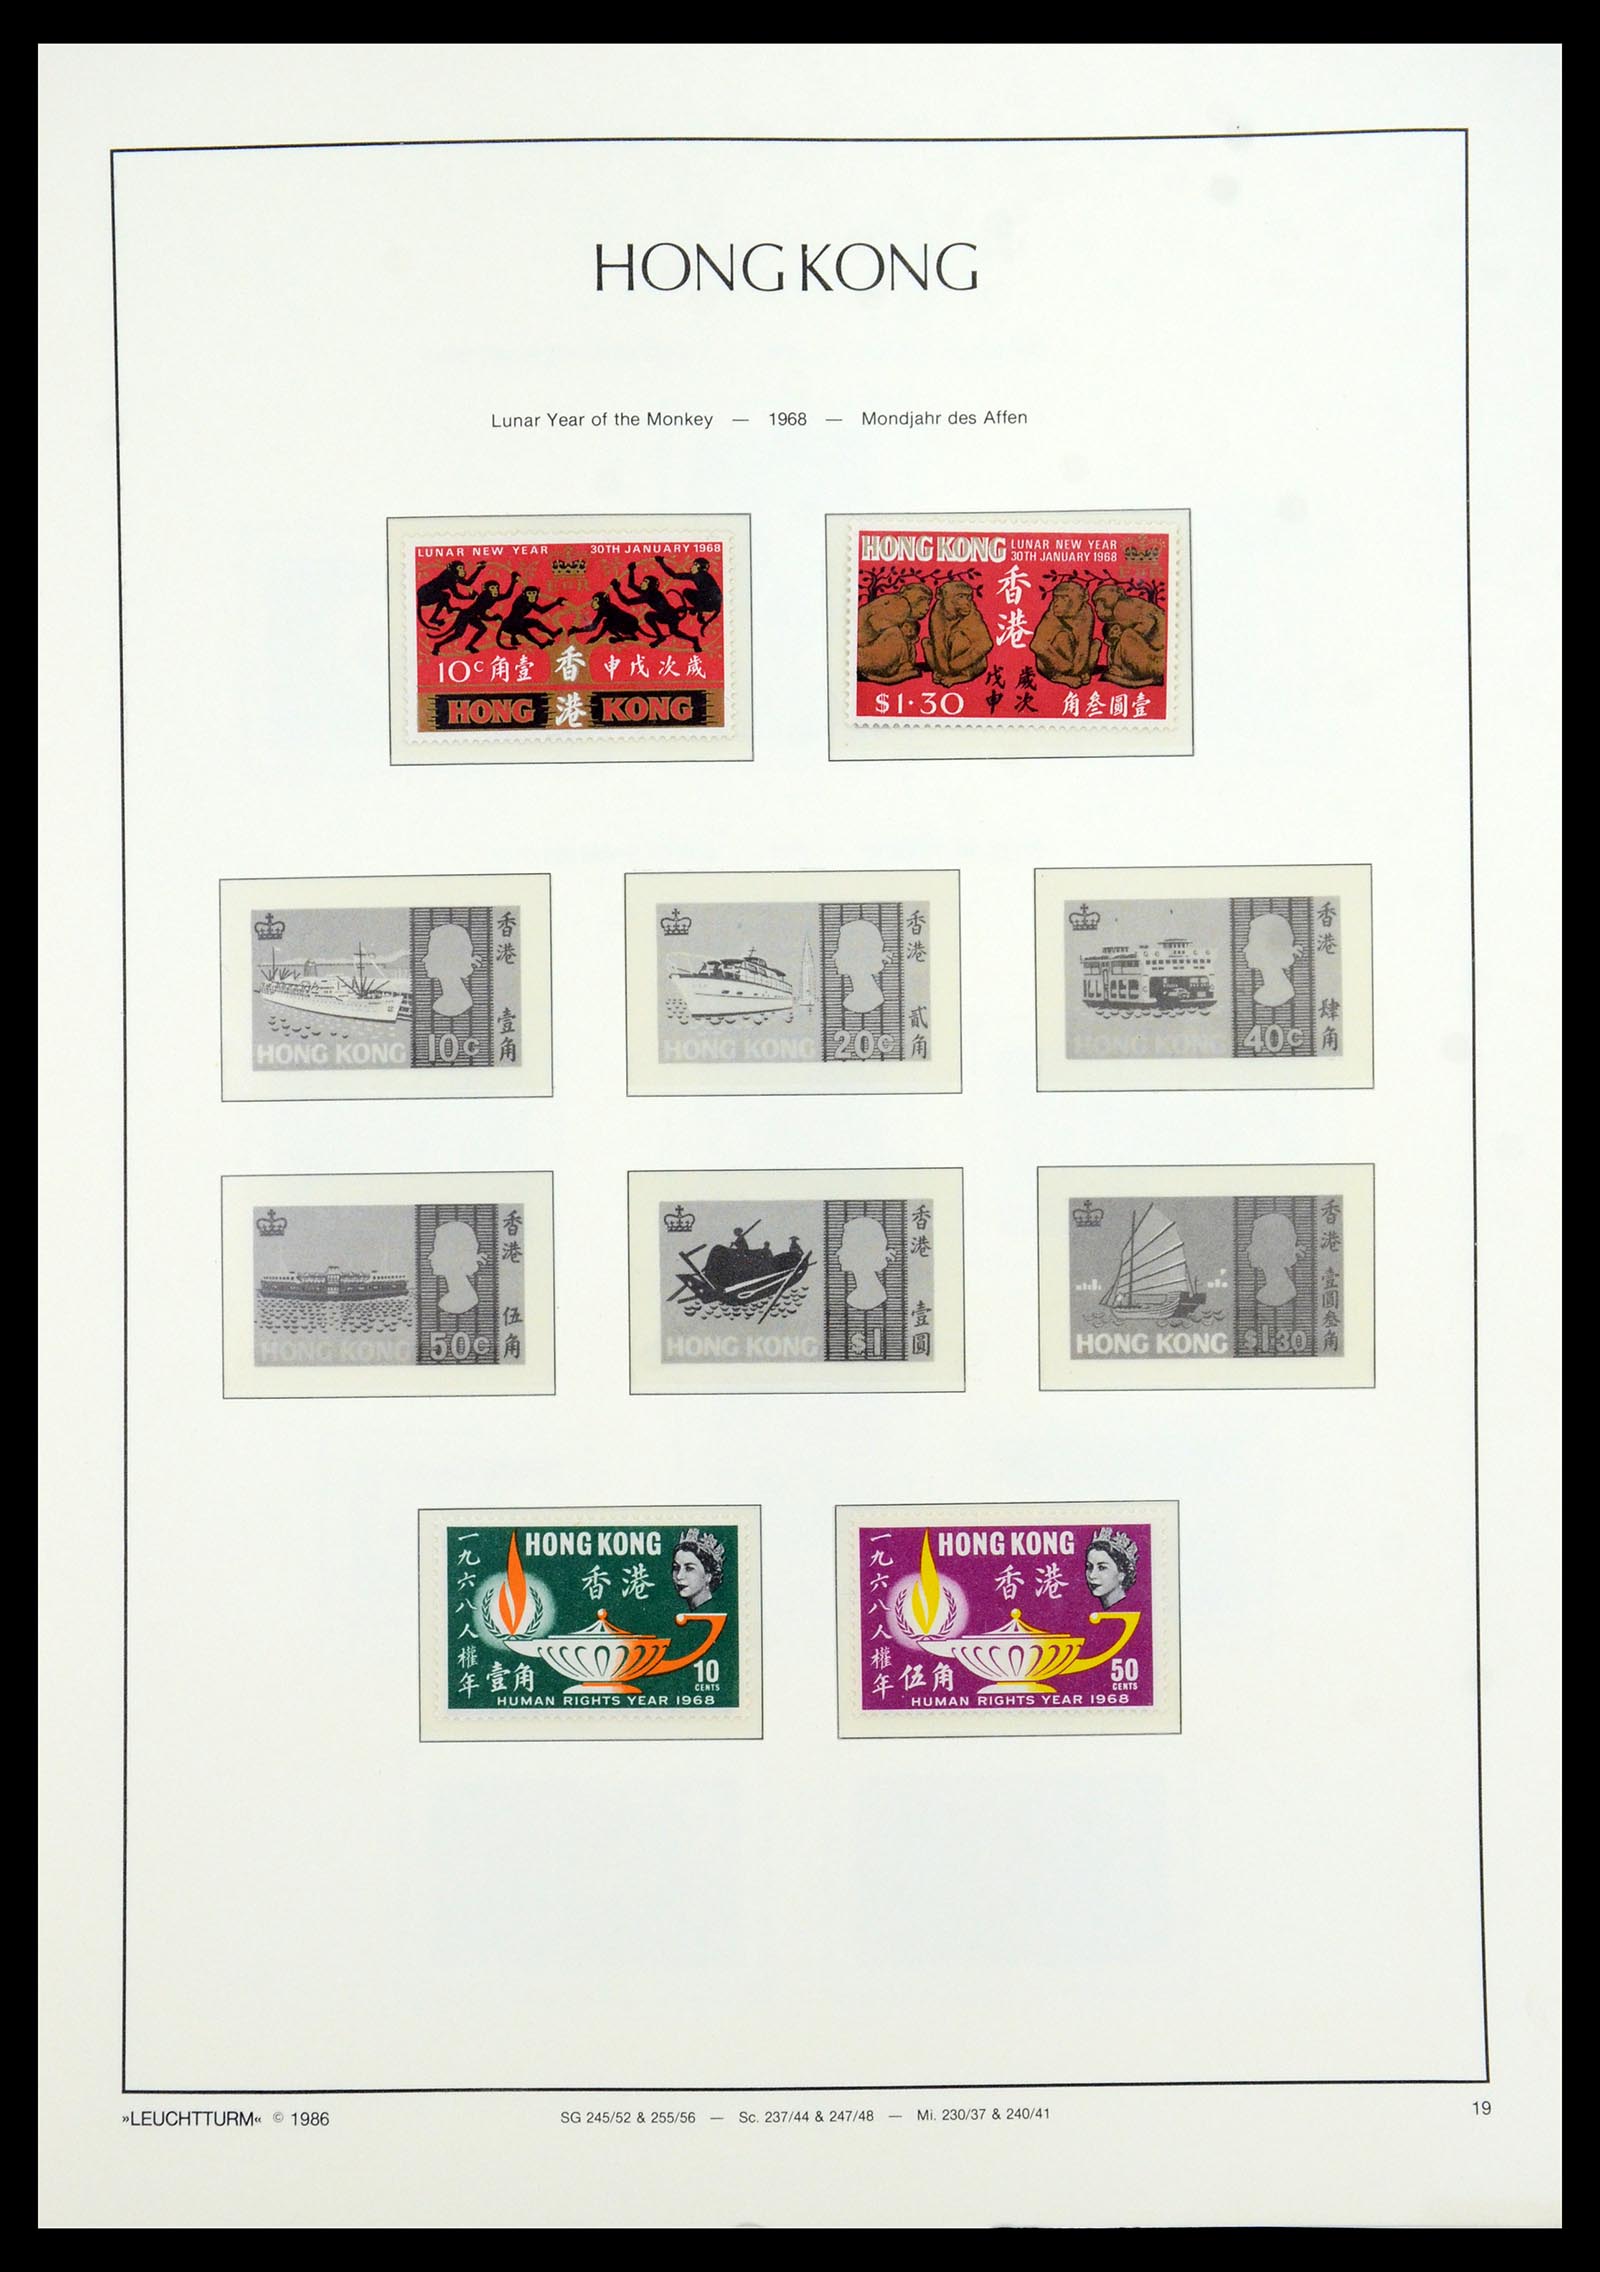 35997 005 - Stamp collection 35997 Hong Kong 1949-1996.